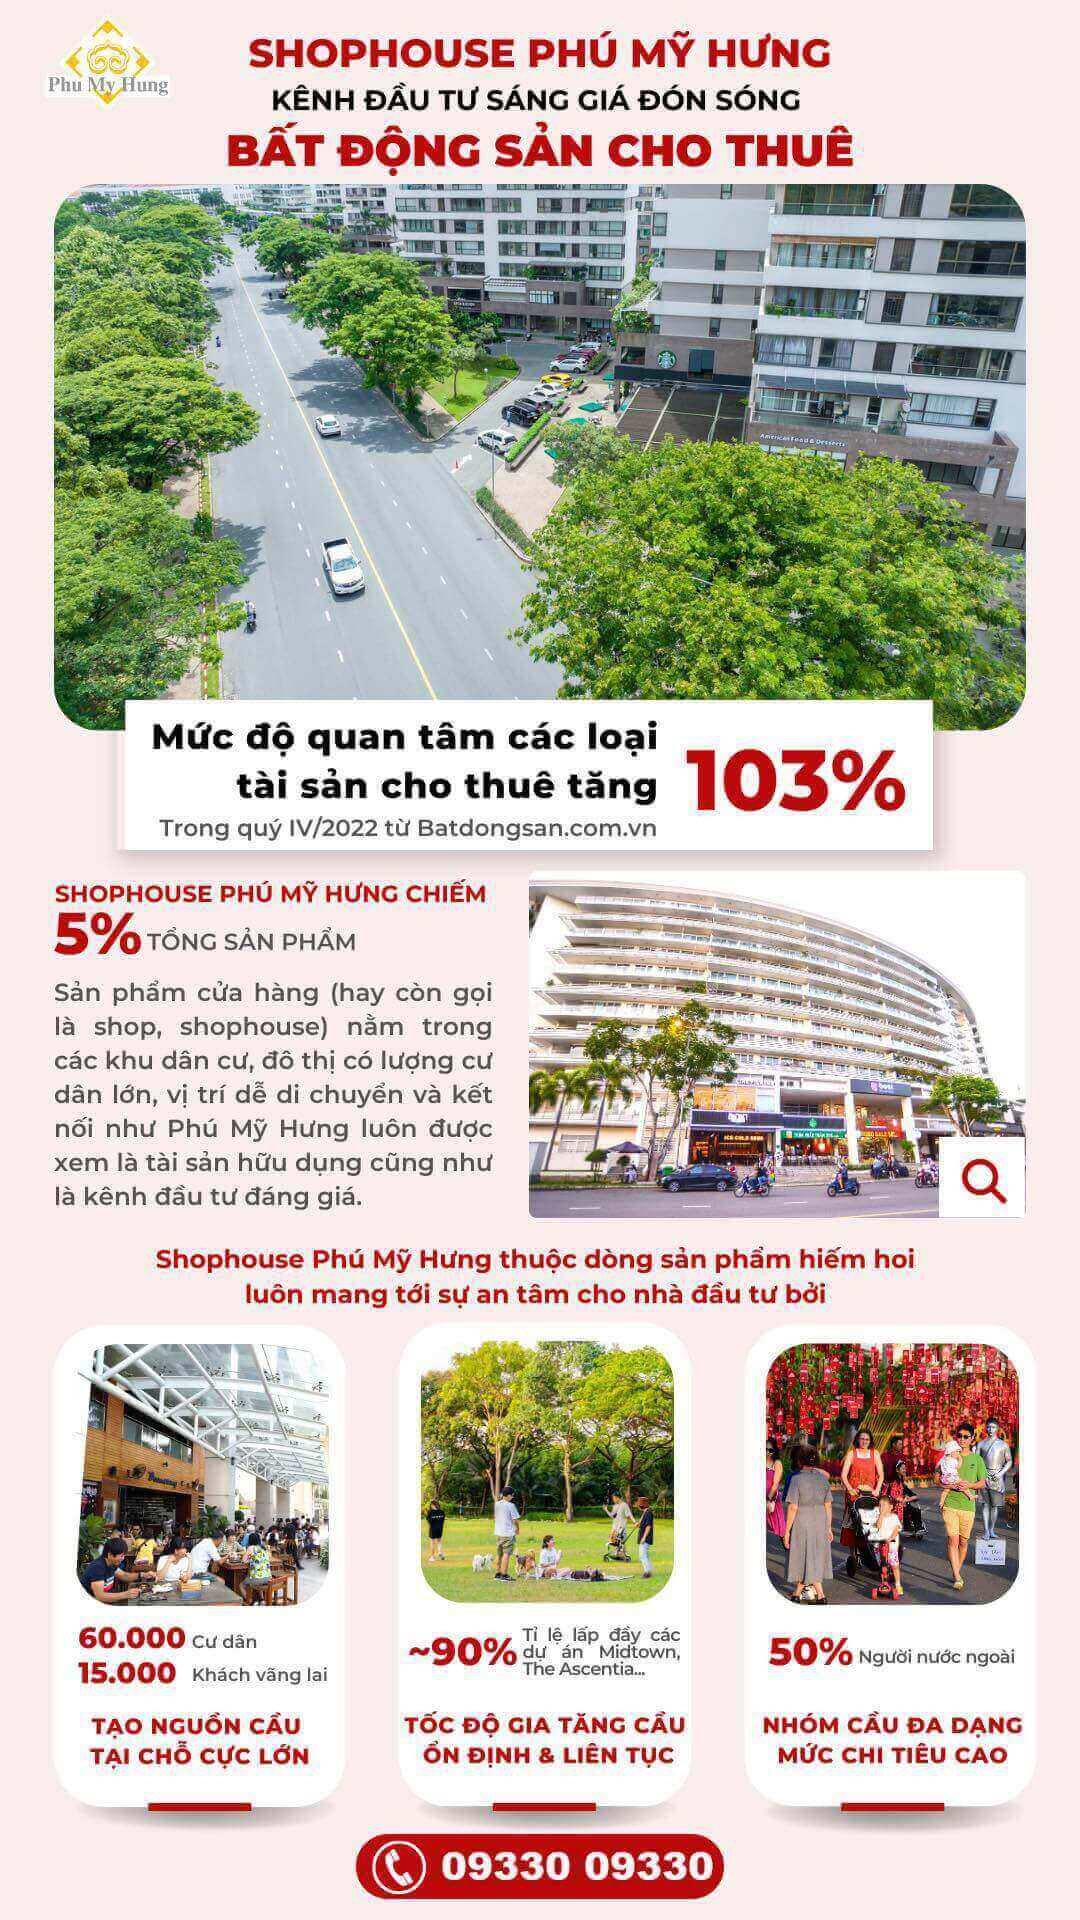 Shophouse Phú Mỹ Hưng kênh đầu tư sáng giá đón sóng bất động sản cho thuê